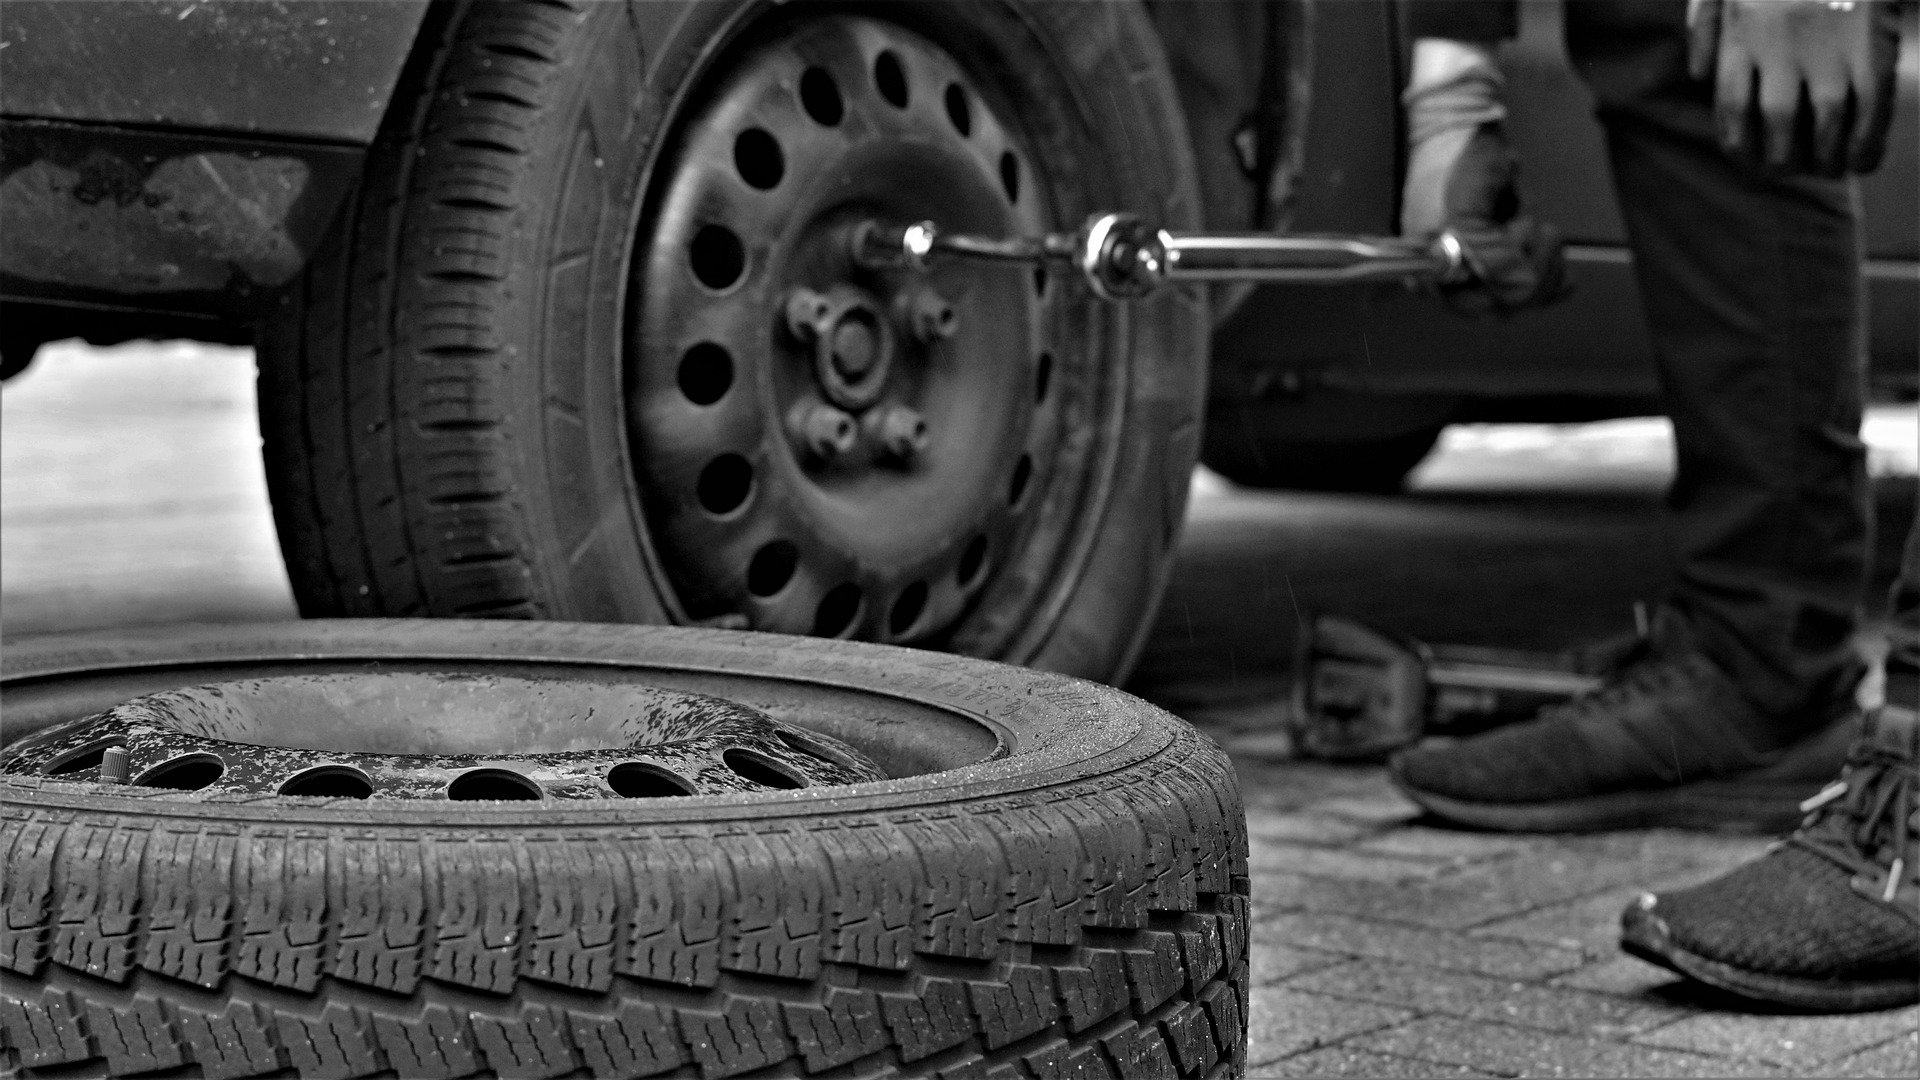 Von Ölwechsel bis Reifentausch: Schrauben am eigenen Auto steht hoch im  Kurs 